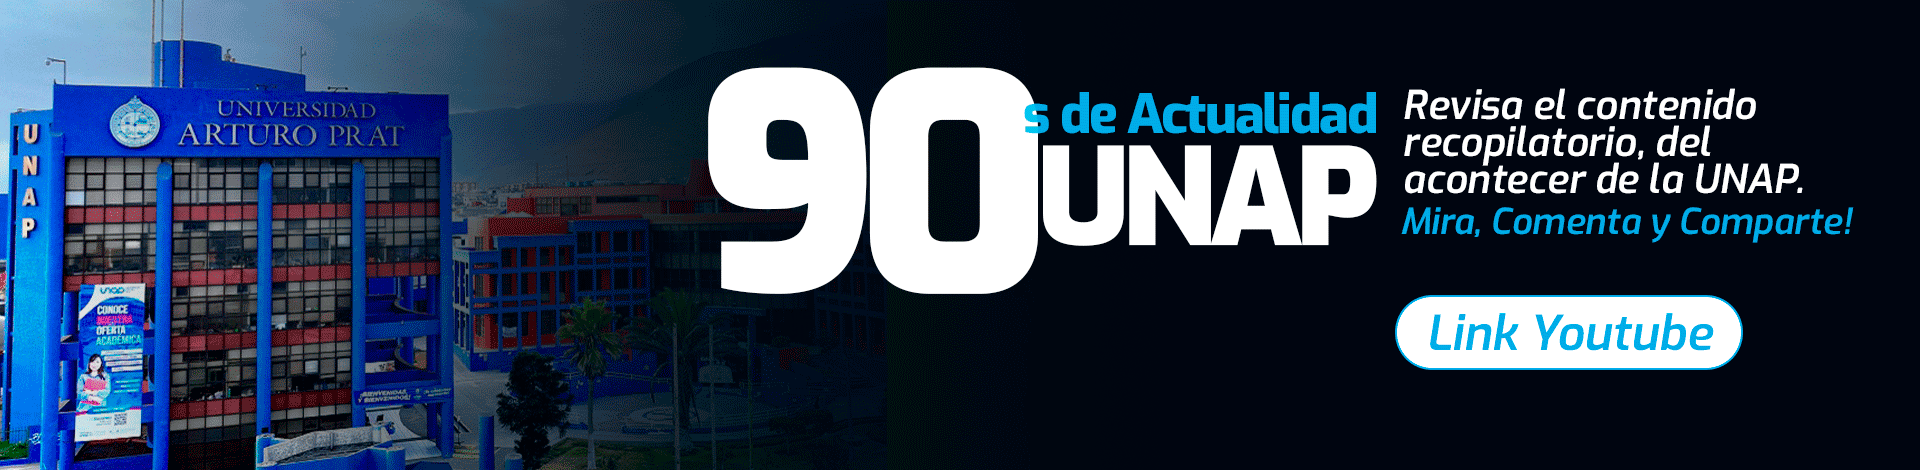 Banner 90 seg Actualidad UNAP